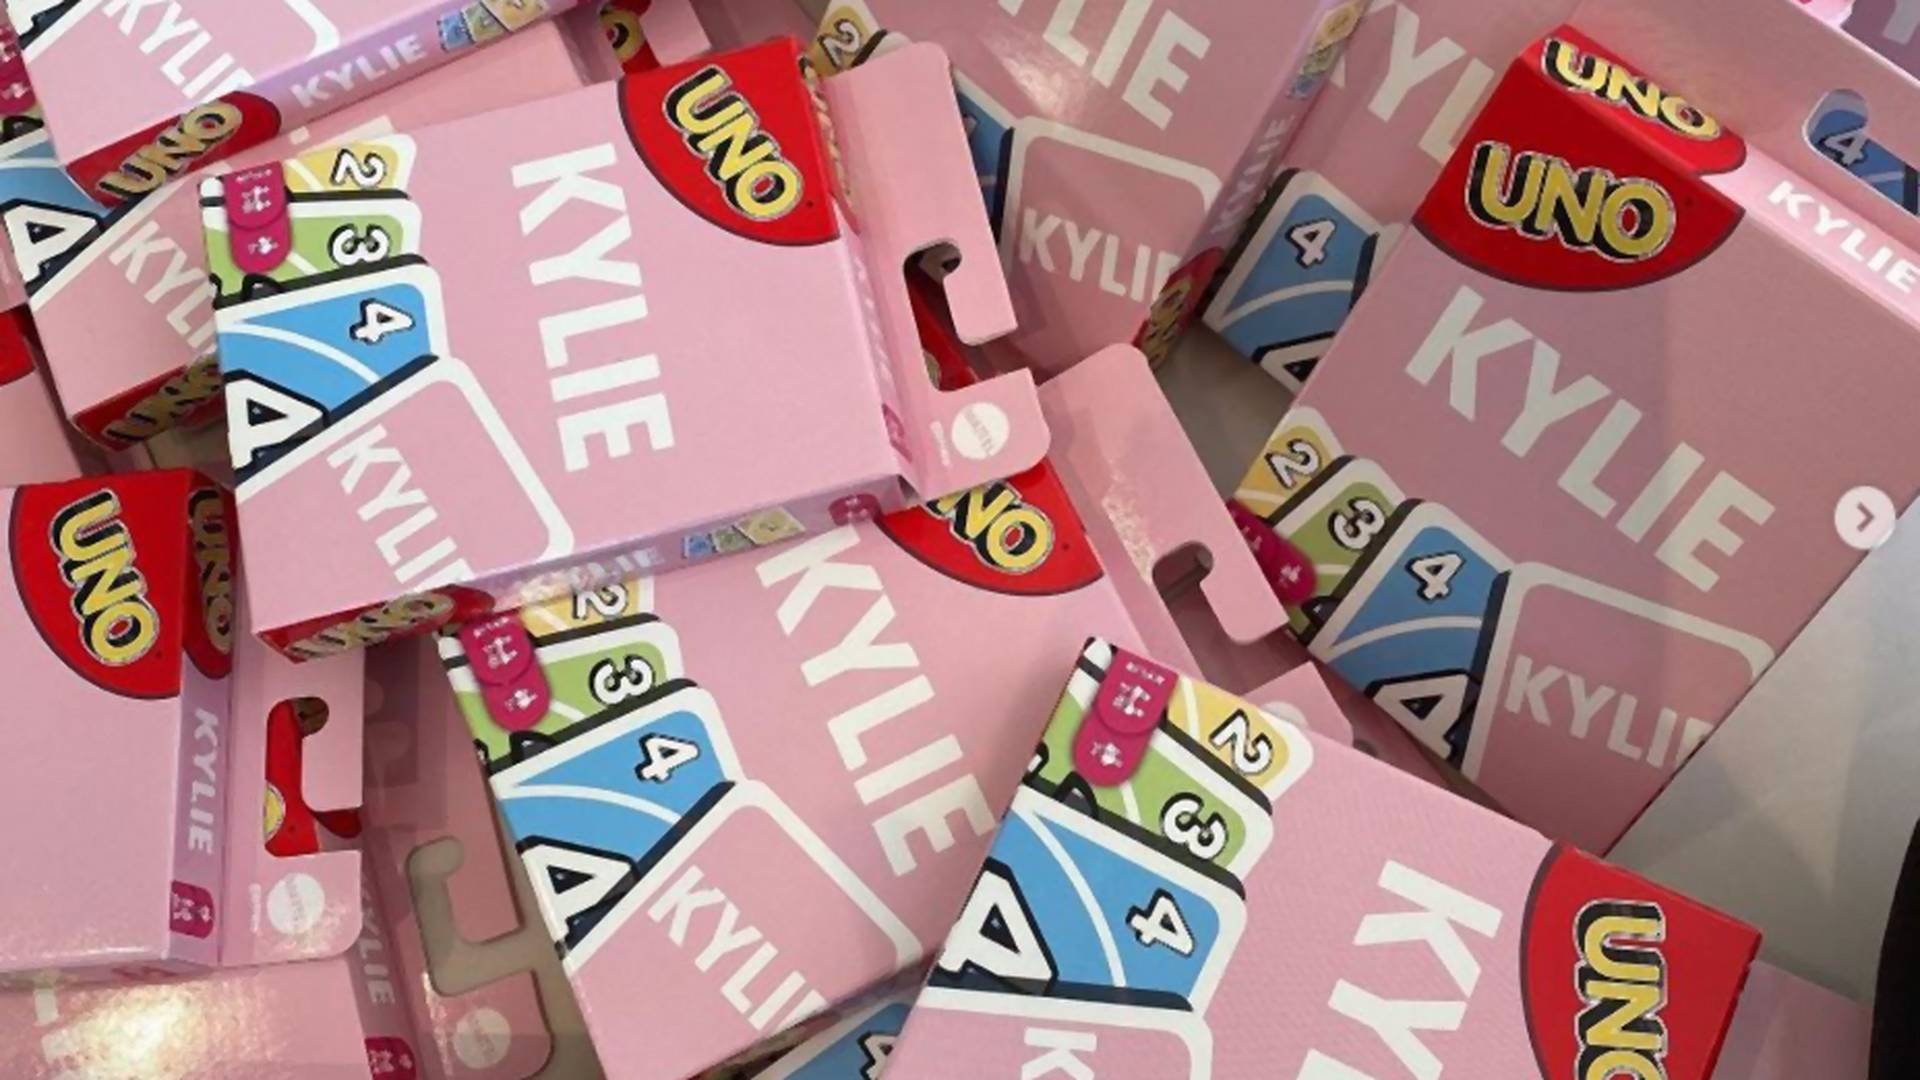 Instant buy: Kylie Jenner UNO kártyajátékot dobott a piacra